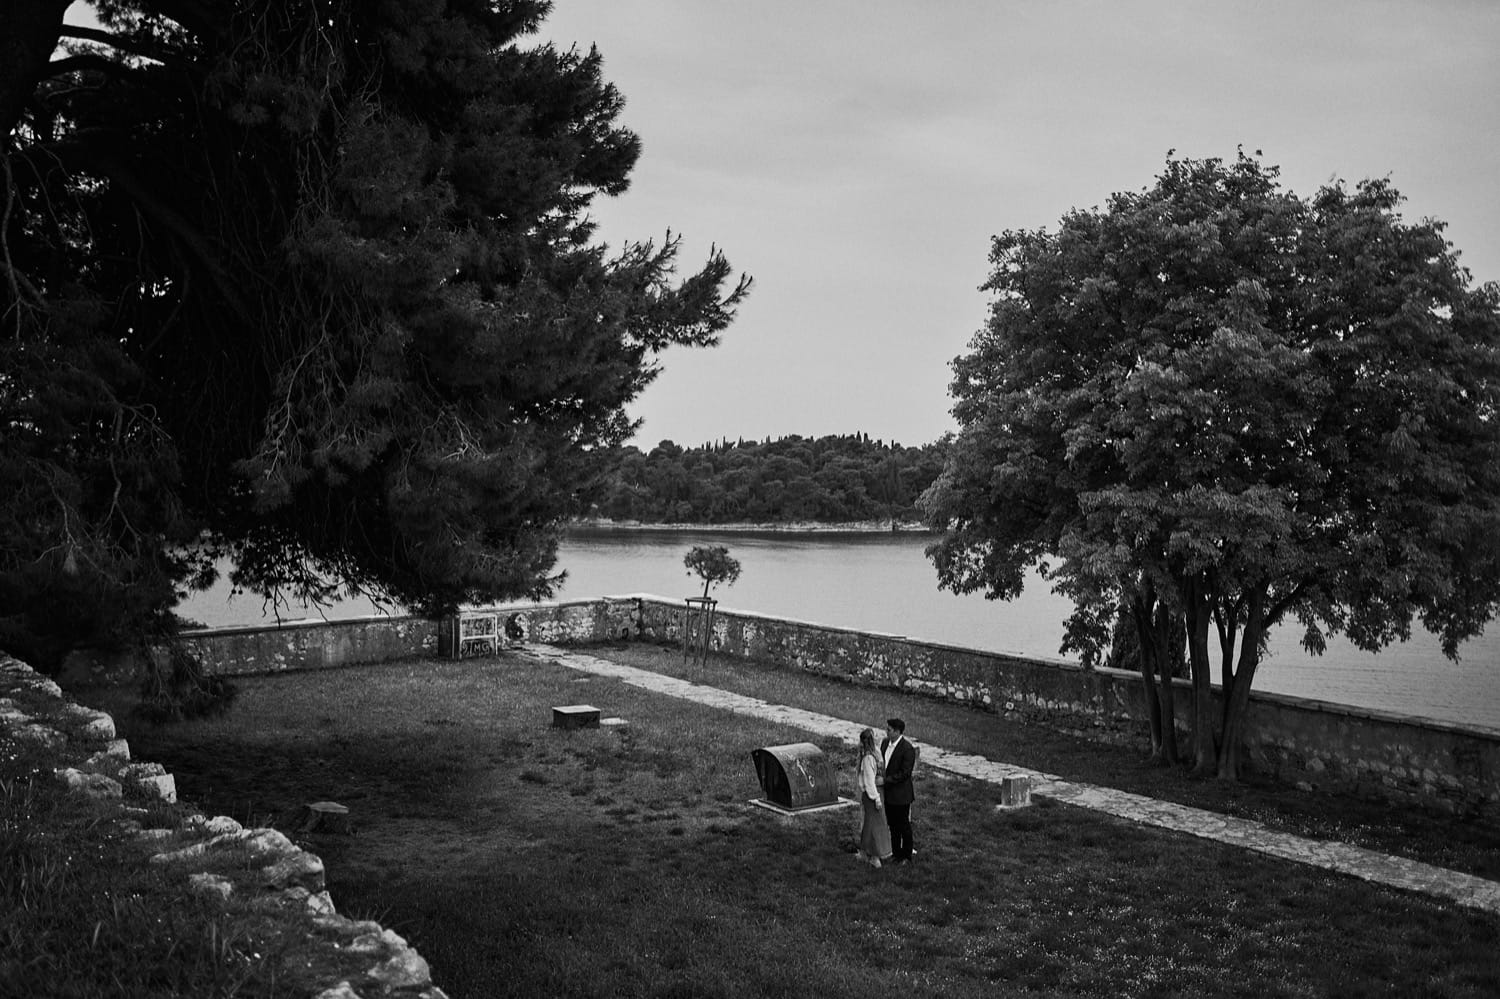 Croatia,wedding,photographer